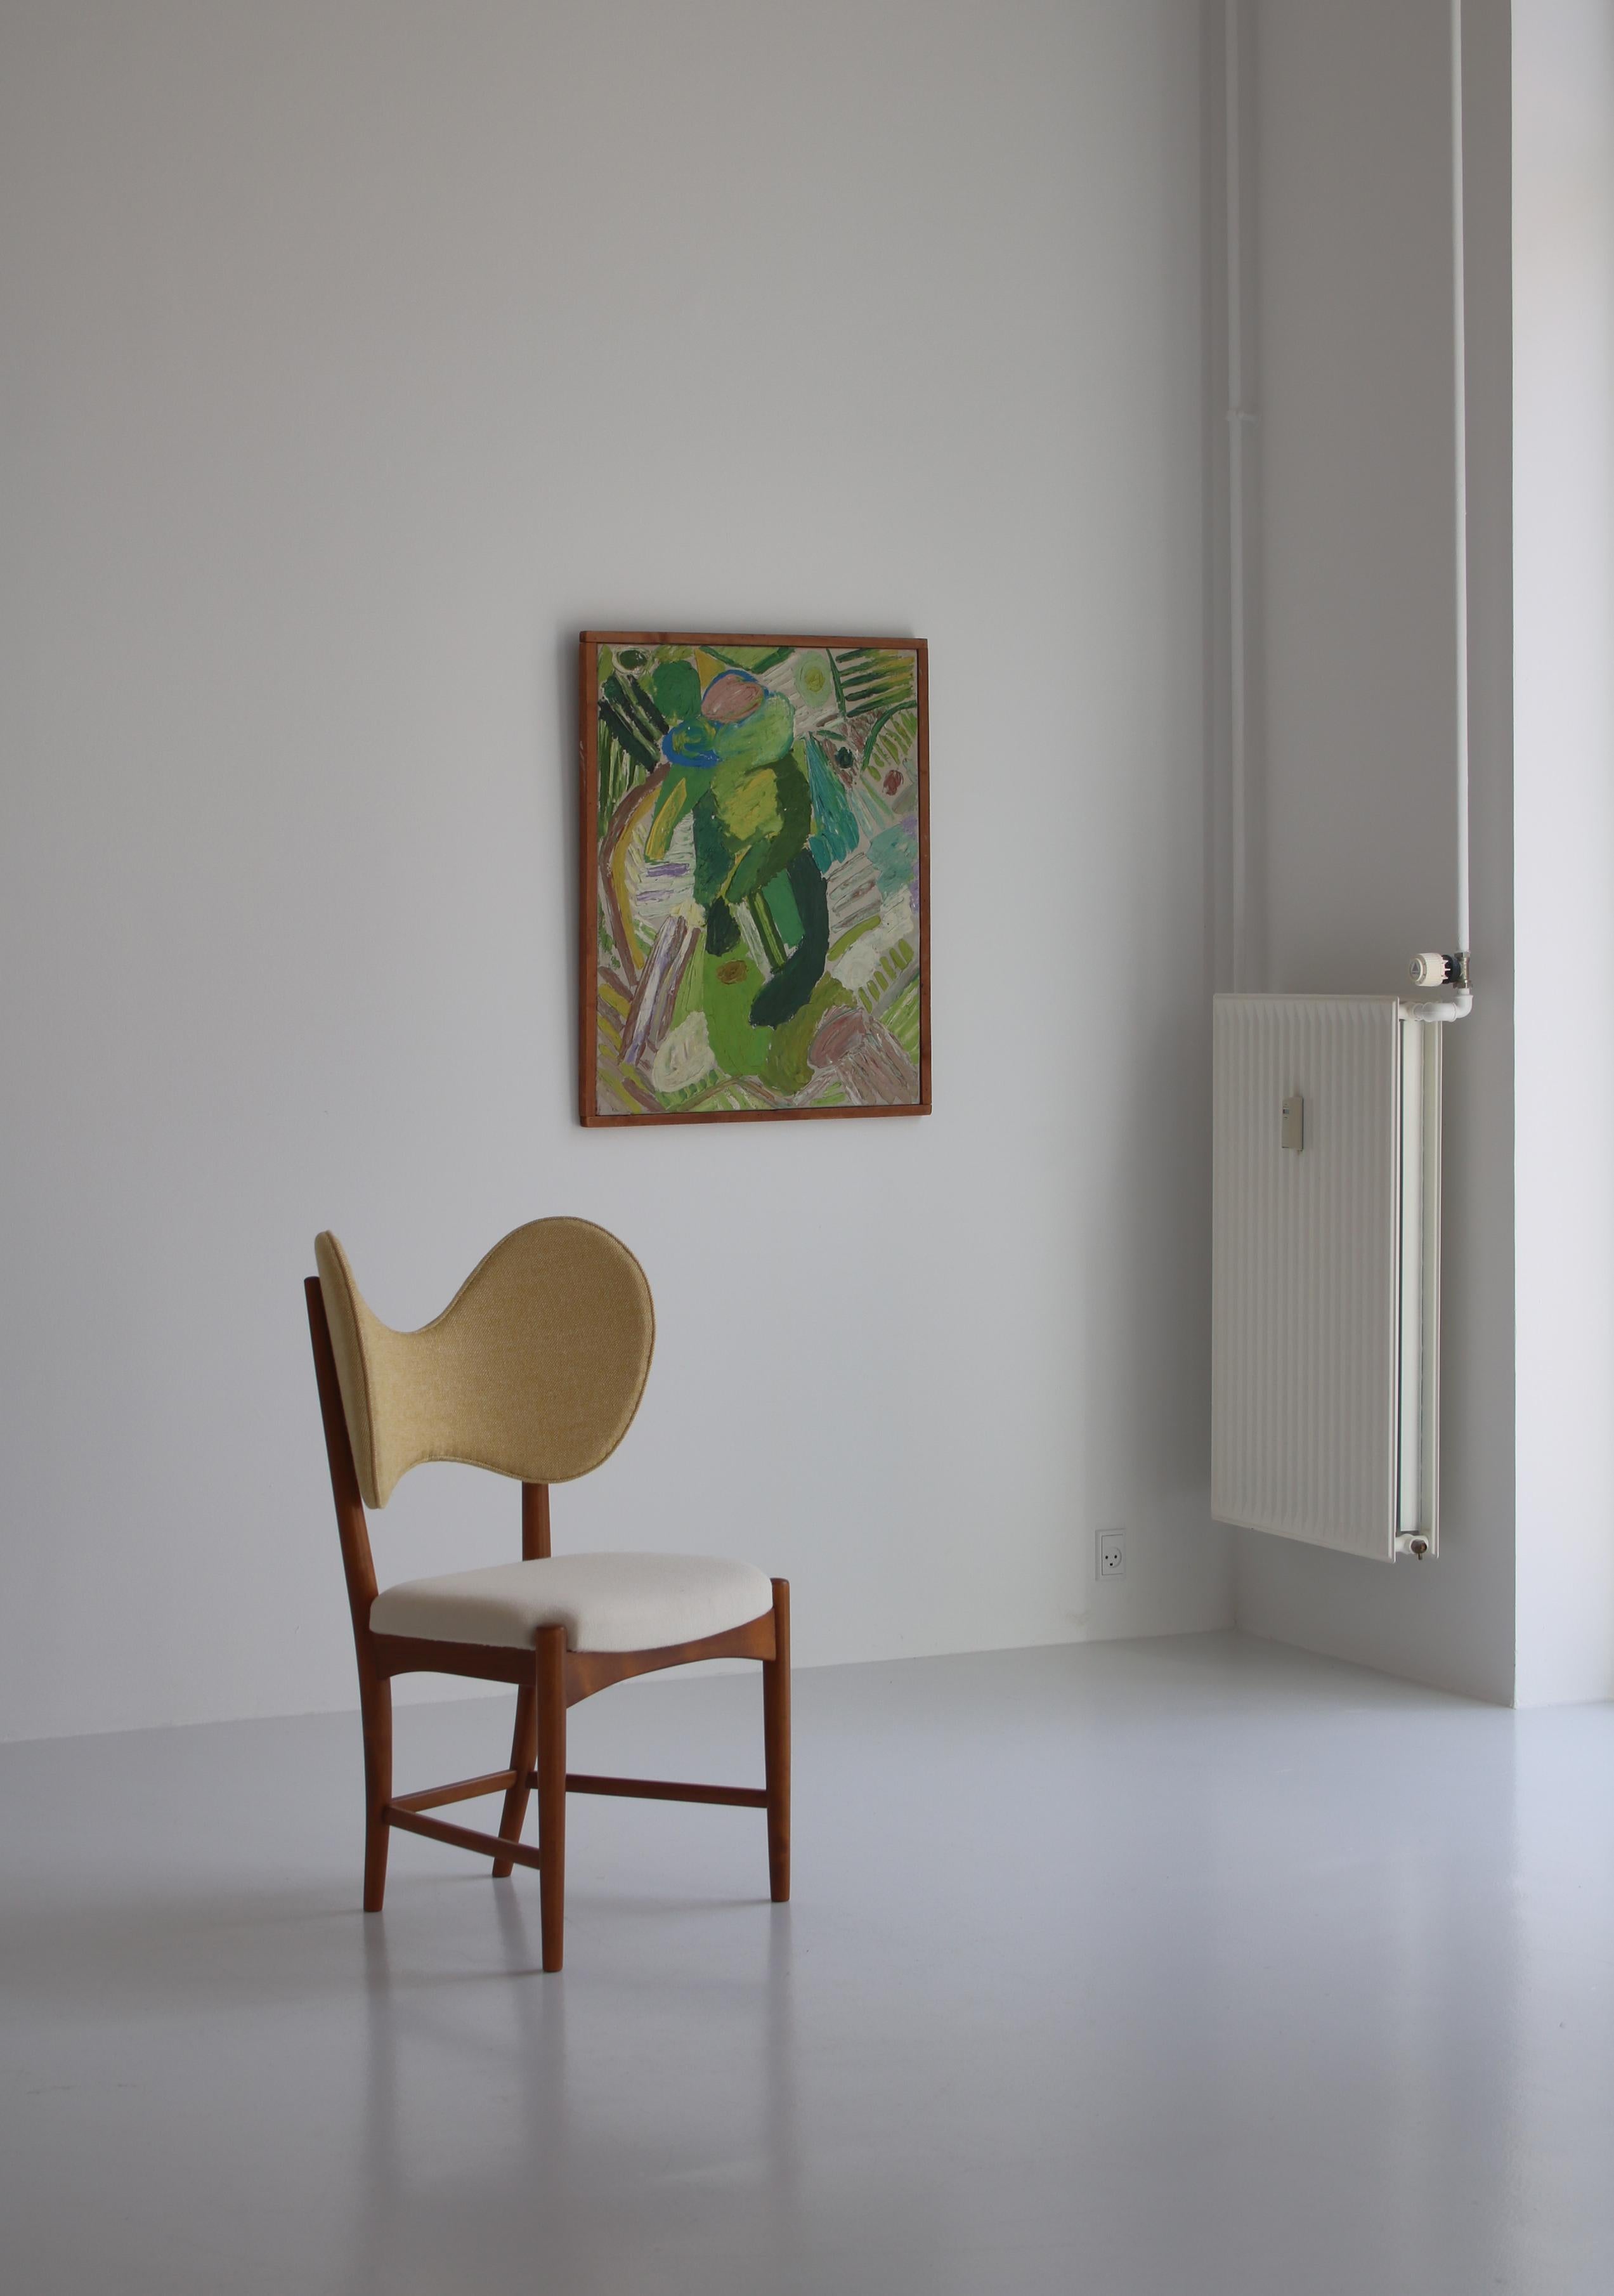 Wunderschöner und sehr seltener dänischer Designstuhl aus den frühen 1950er Jahren von den Designern Eva & Nils Koppel. Hergestellt und produziert in Dänemark von 